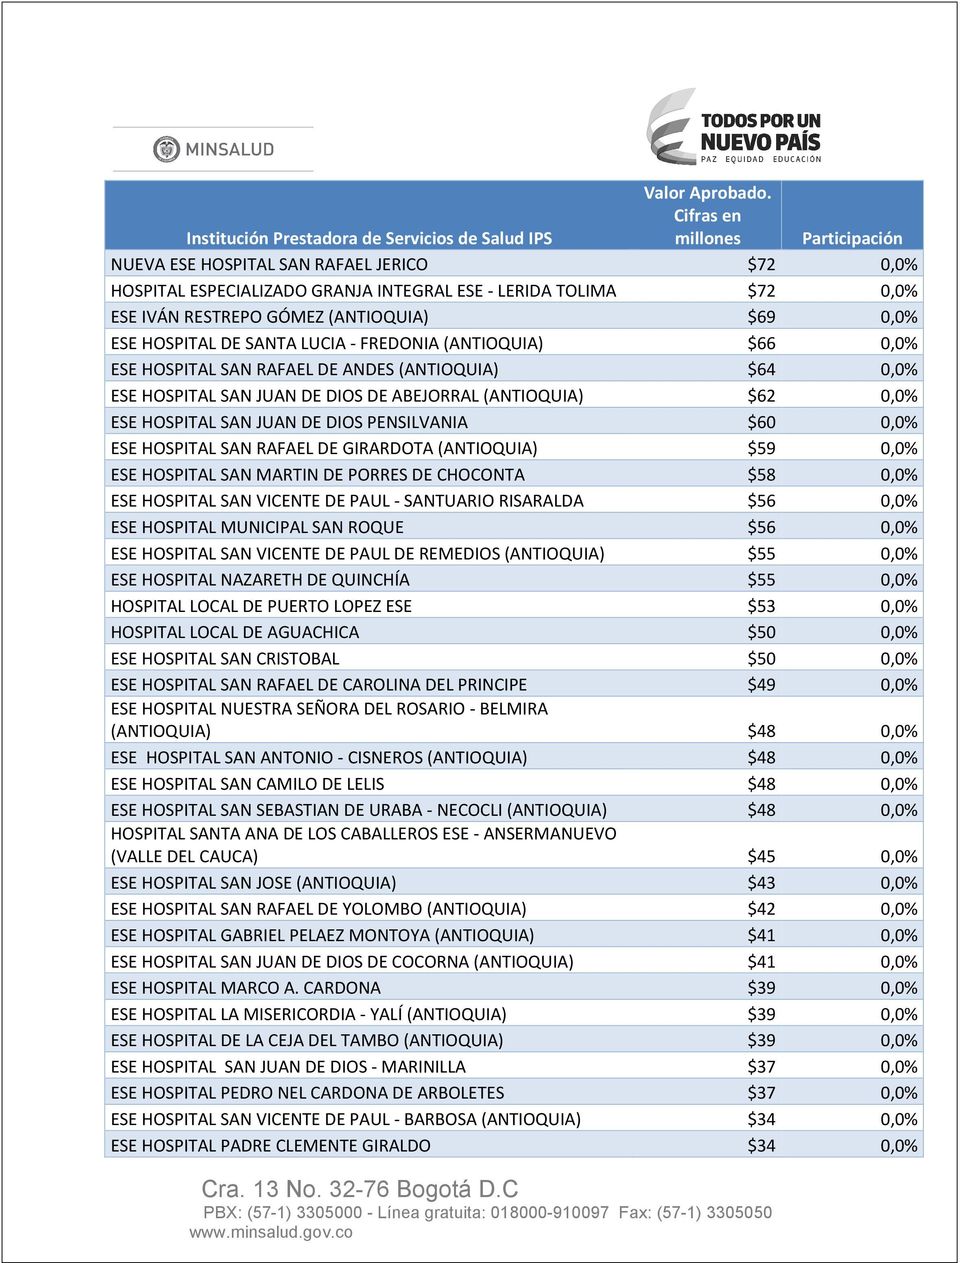 HOSPITAL DE SANTA LUCIA - FREDONIA (ANTIOQUIA) $66 0,0% ESE HOSPITAL SAN RAFAEL DE ANDES (ANTIOQUIA) $64 0,0% ESE HOSPITAL SAN JUAN DE DIOS DE ABEJORRAL (ANTIOQUIA) $62 0,0% ESE HOSPITAL SAN JUAN DE